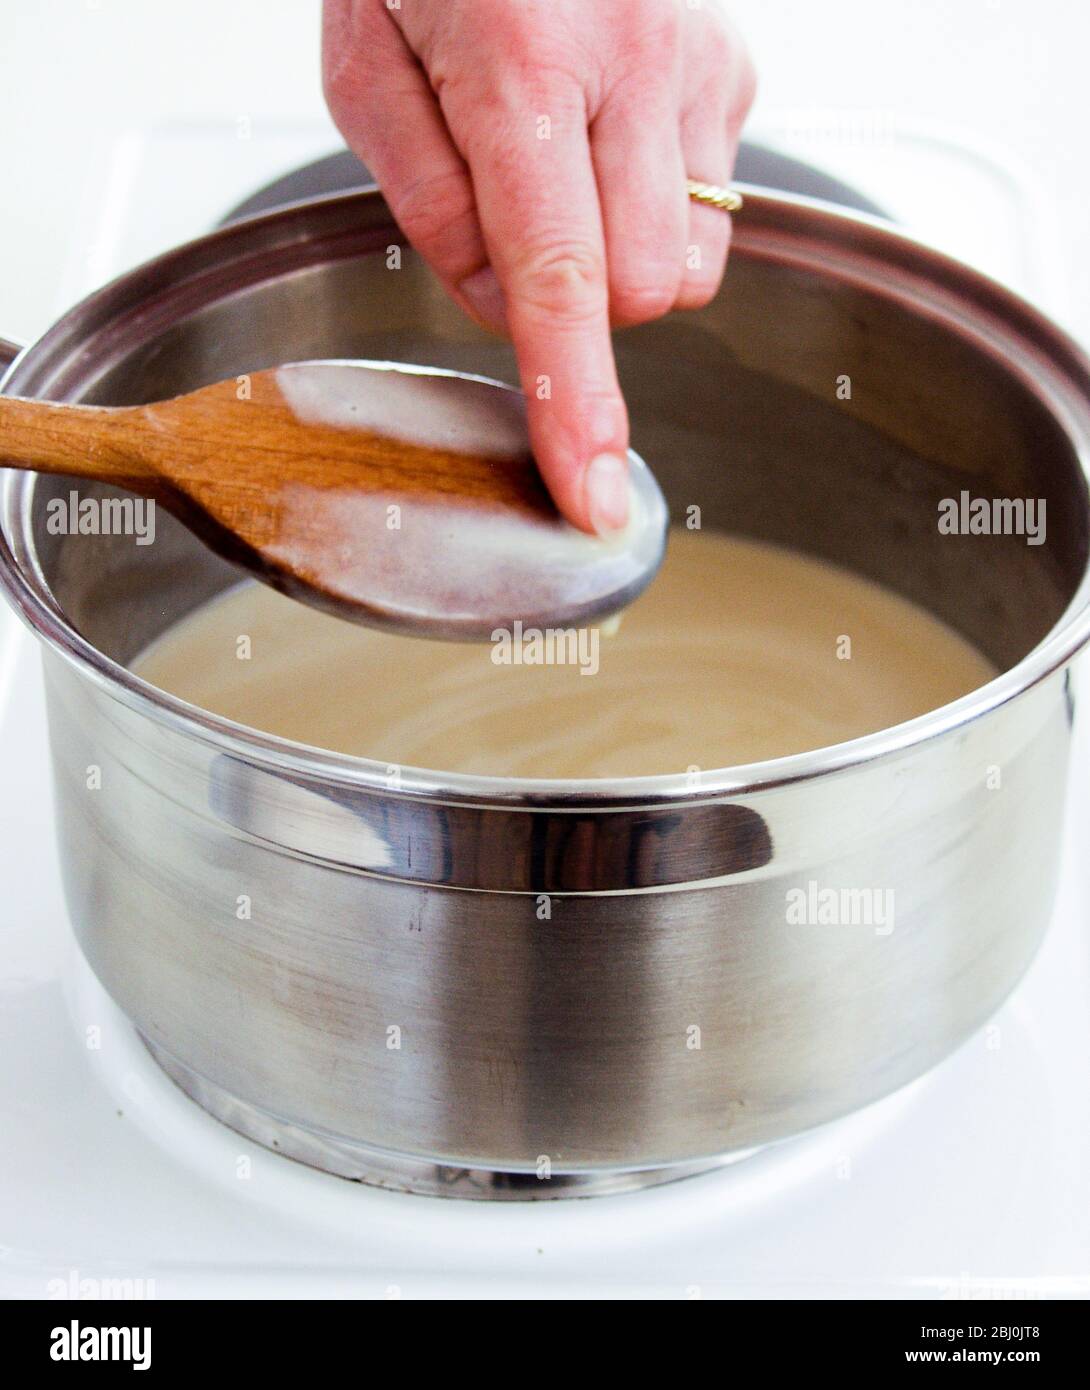 Überprüfen der Dicke eines Pudding, indem Sie sehen, wie gut es die Rückseite eines Löffels umhüllt - Stockfoto